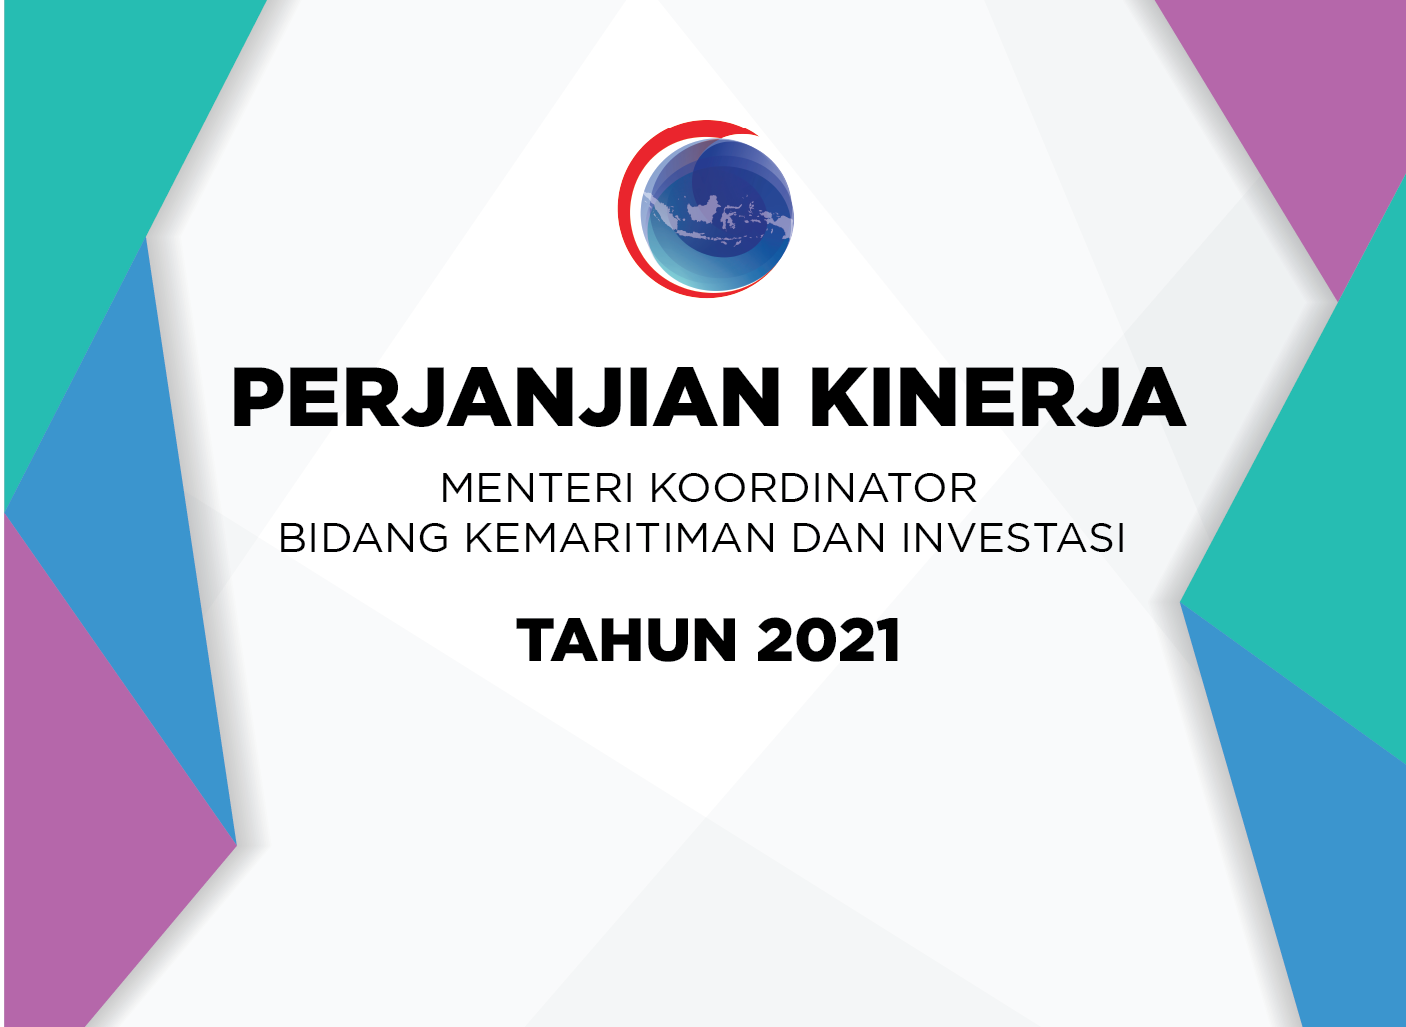 Perjanjian Kinerja Menteri Koordinator Bidang Kemaritiman dan Investasi Tahun 2021